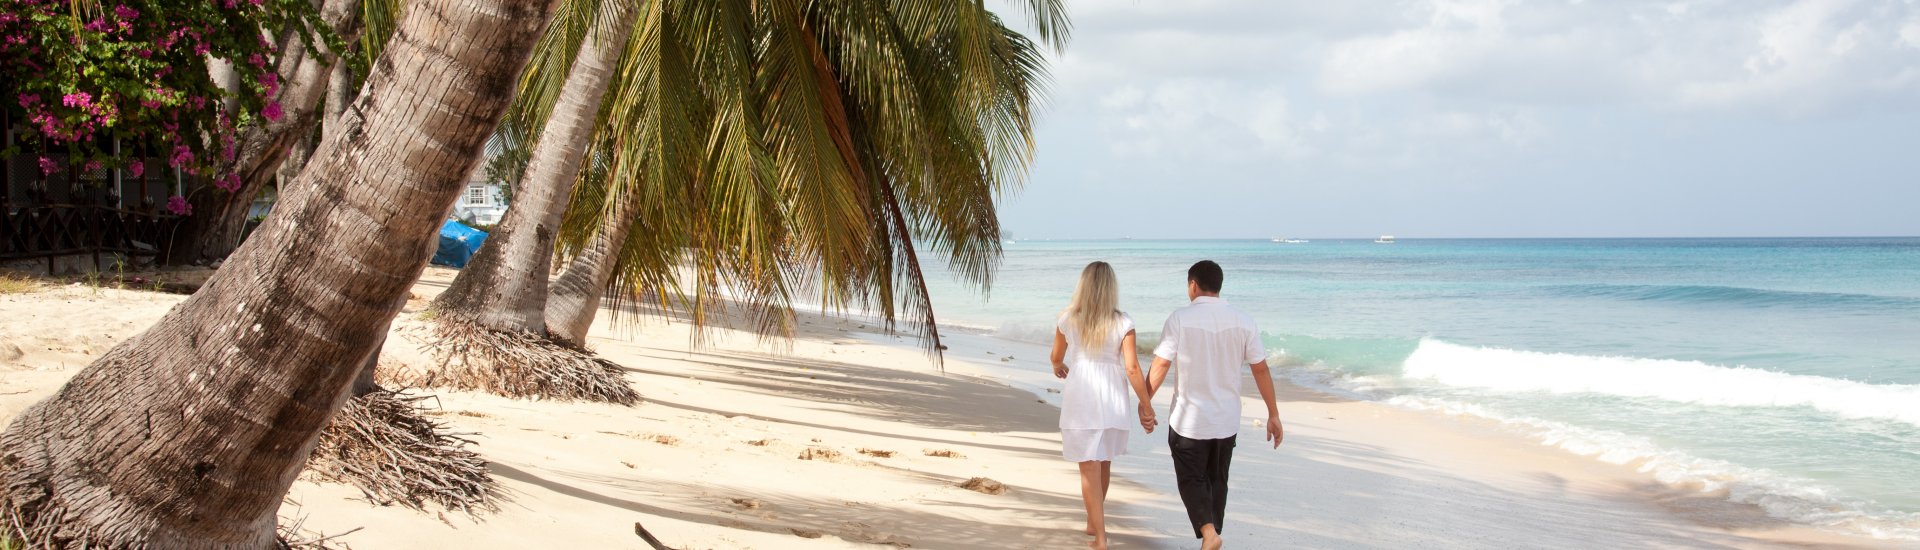 Barbados Honeymoon Holiday Warriors